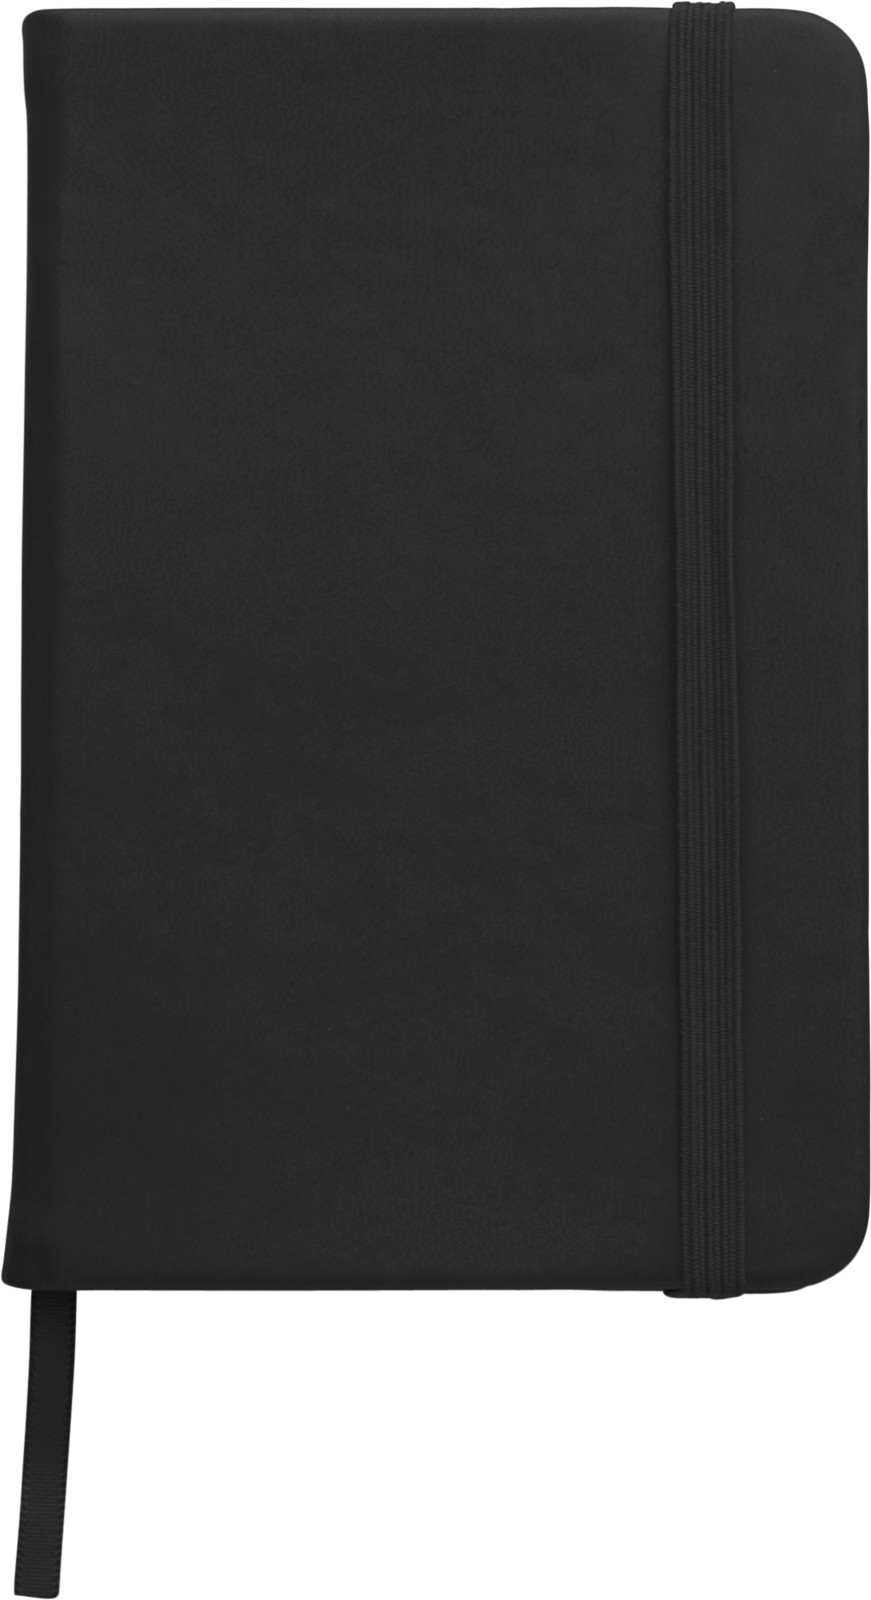 PU notebook - Black